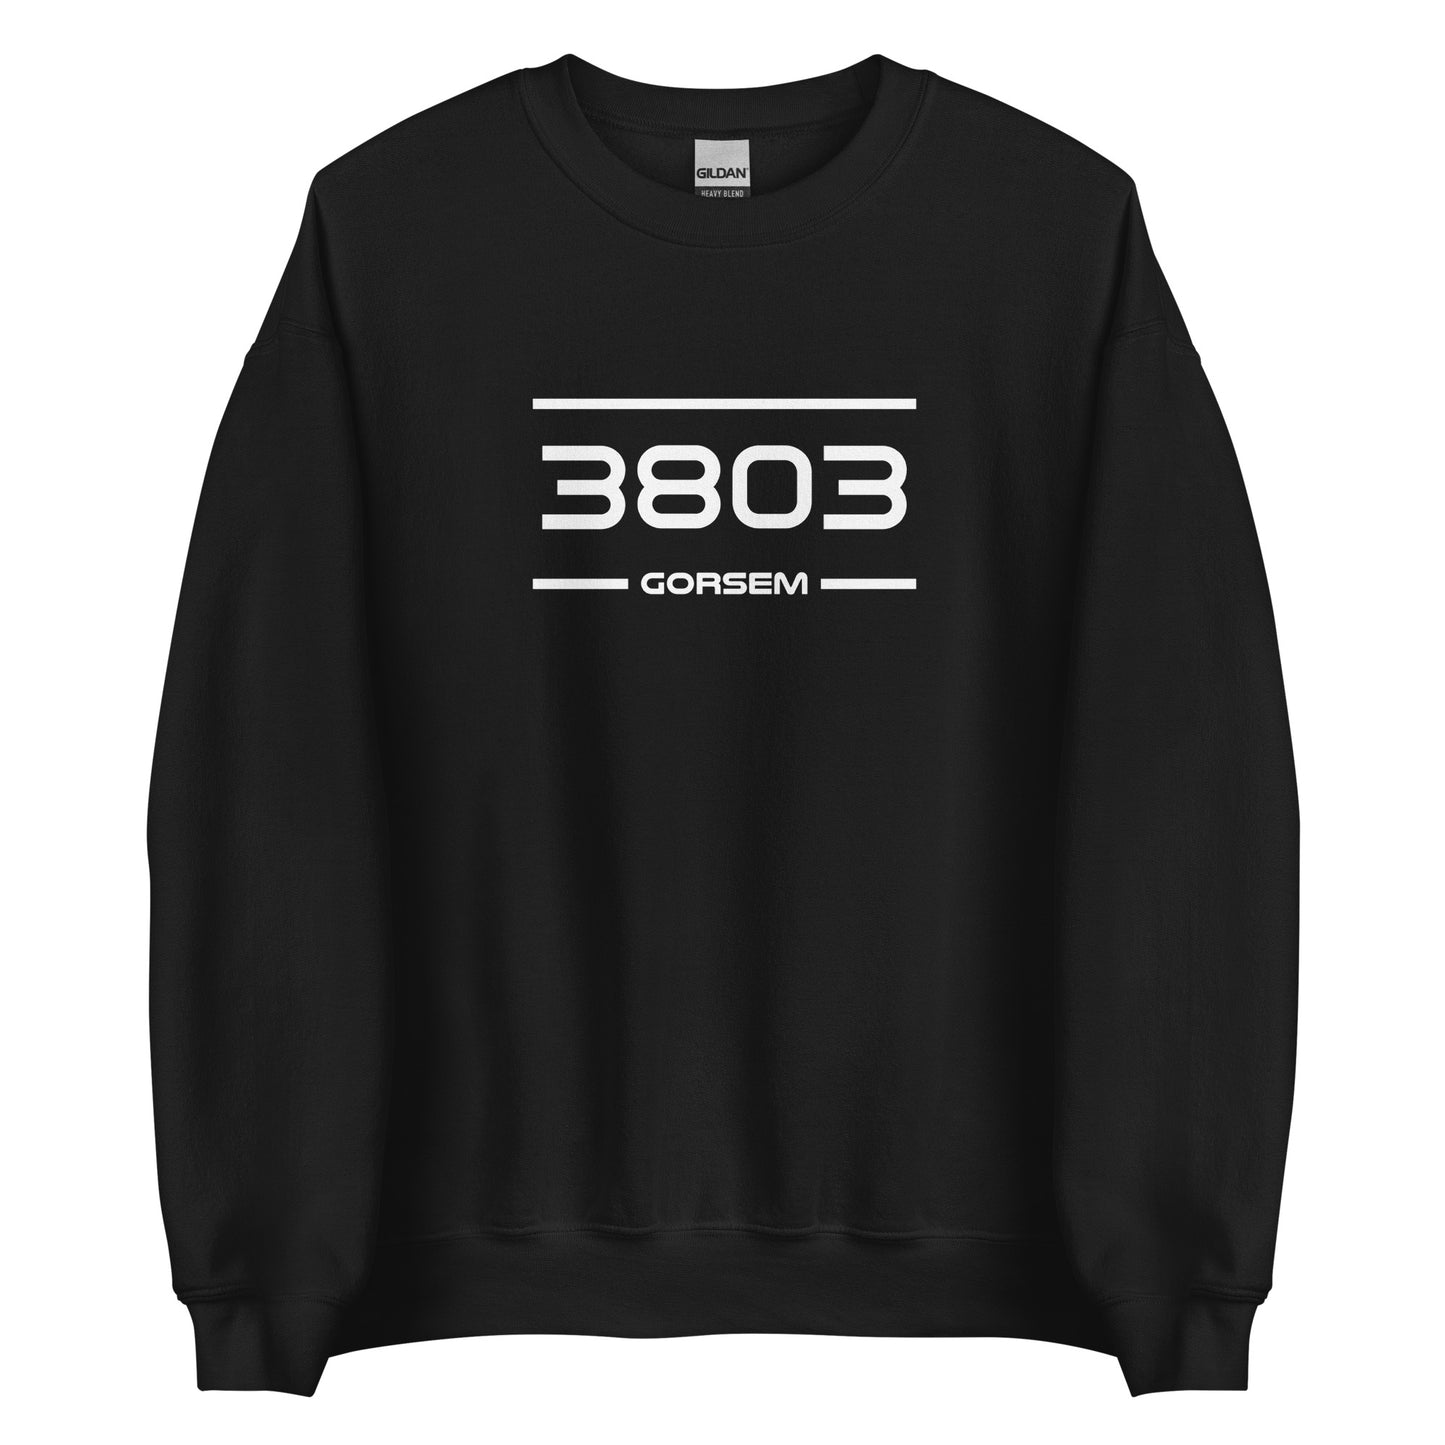 Sweater - 3803 - Gorsem (M/V)